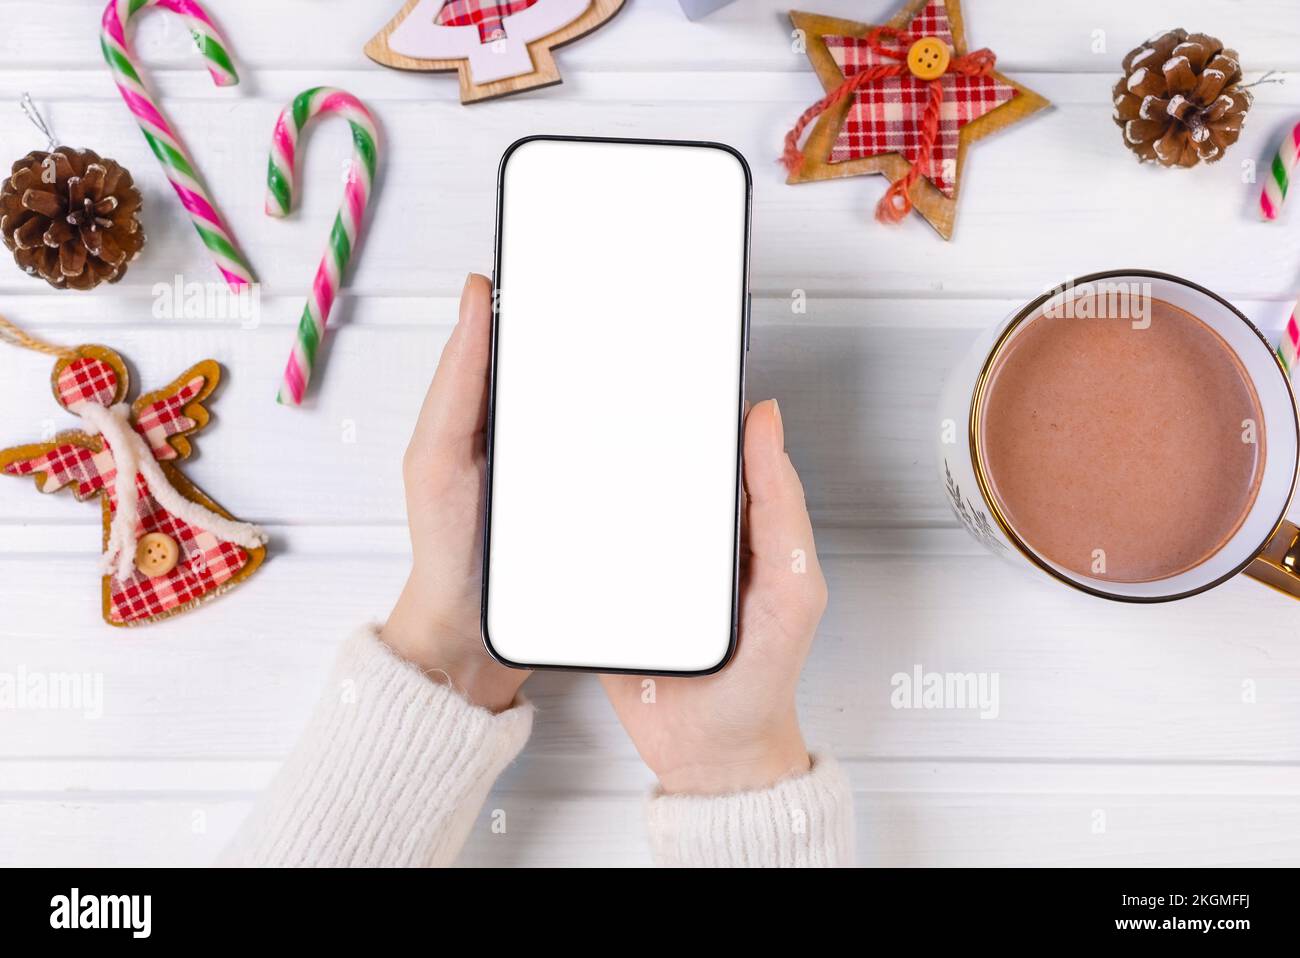 Primo piano donna che tiene il telefono con schermo bianco vuoto mockup su decorati sfondo festivo, festeggiamento Natale, shopping online clienti, acquirenti Foto Stock